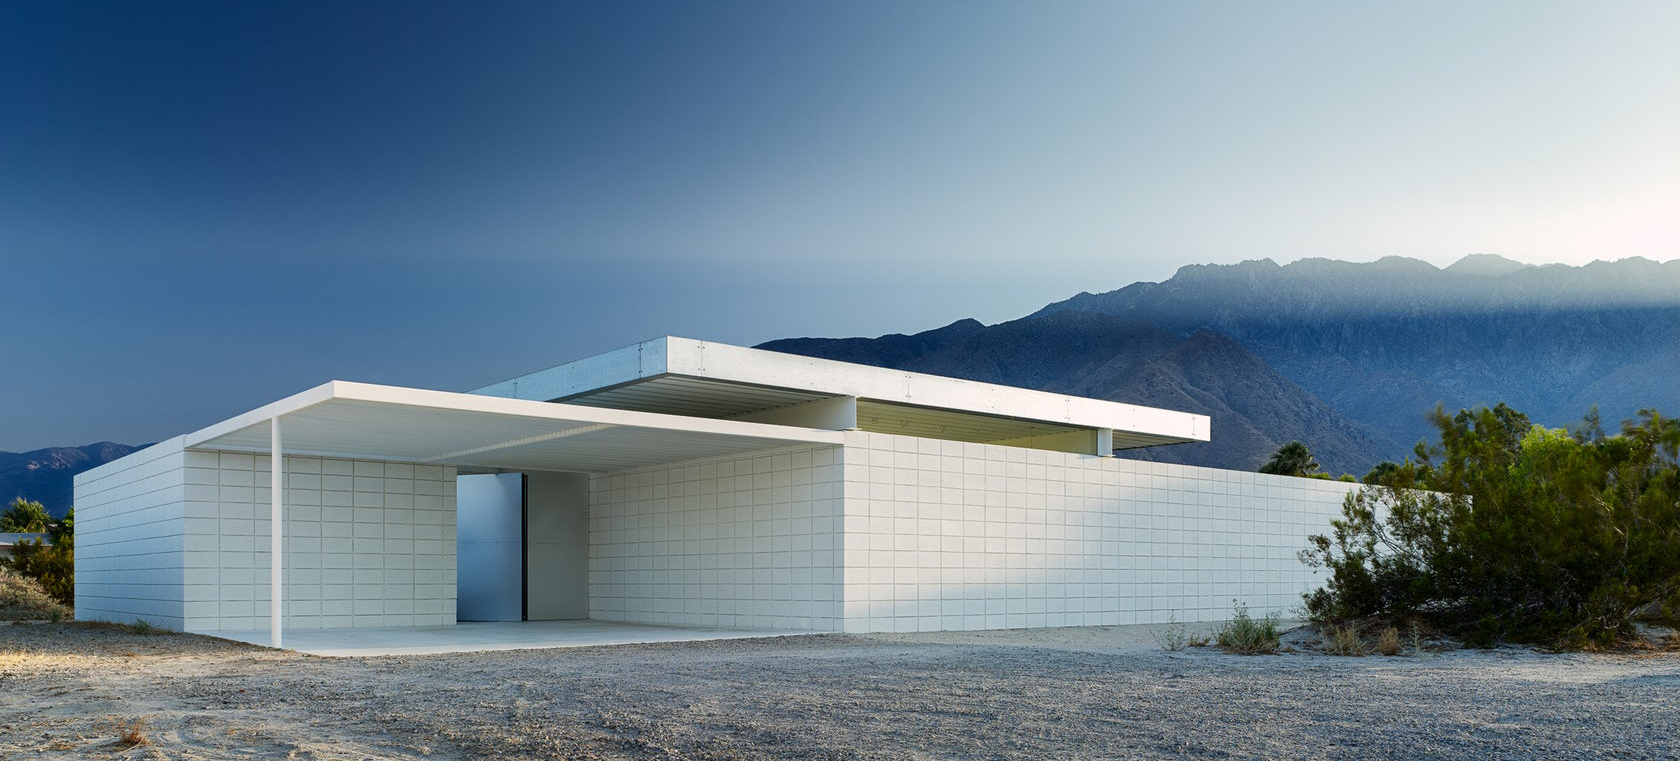 desert house modern